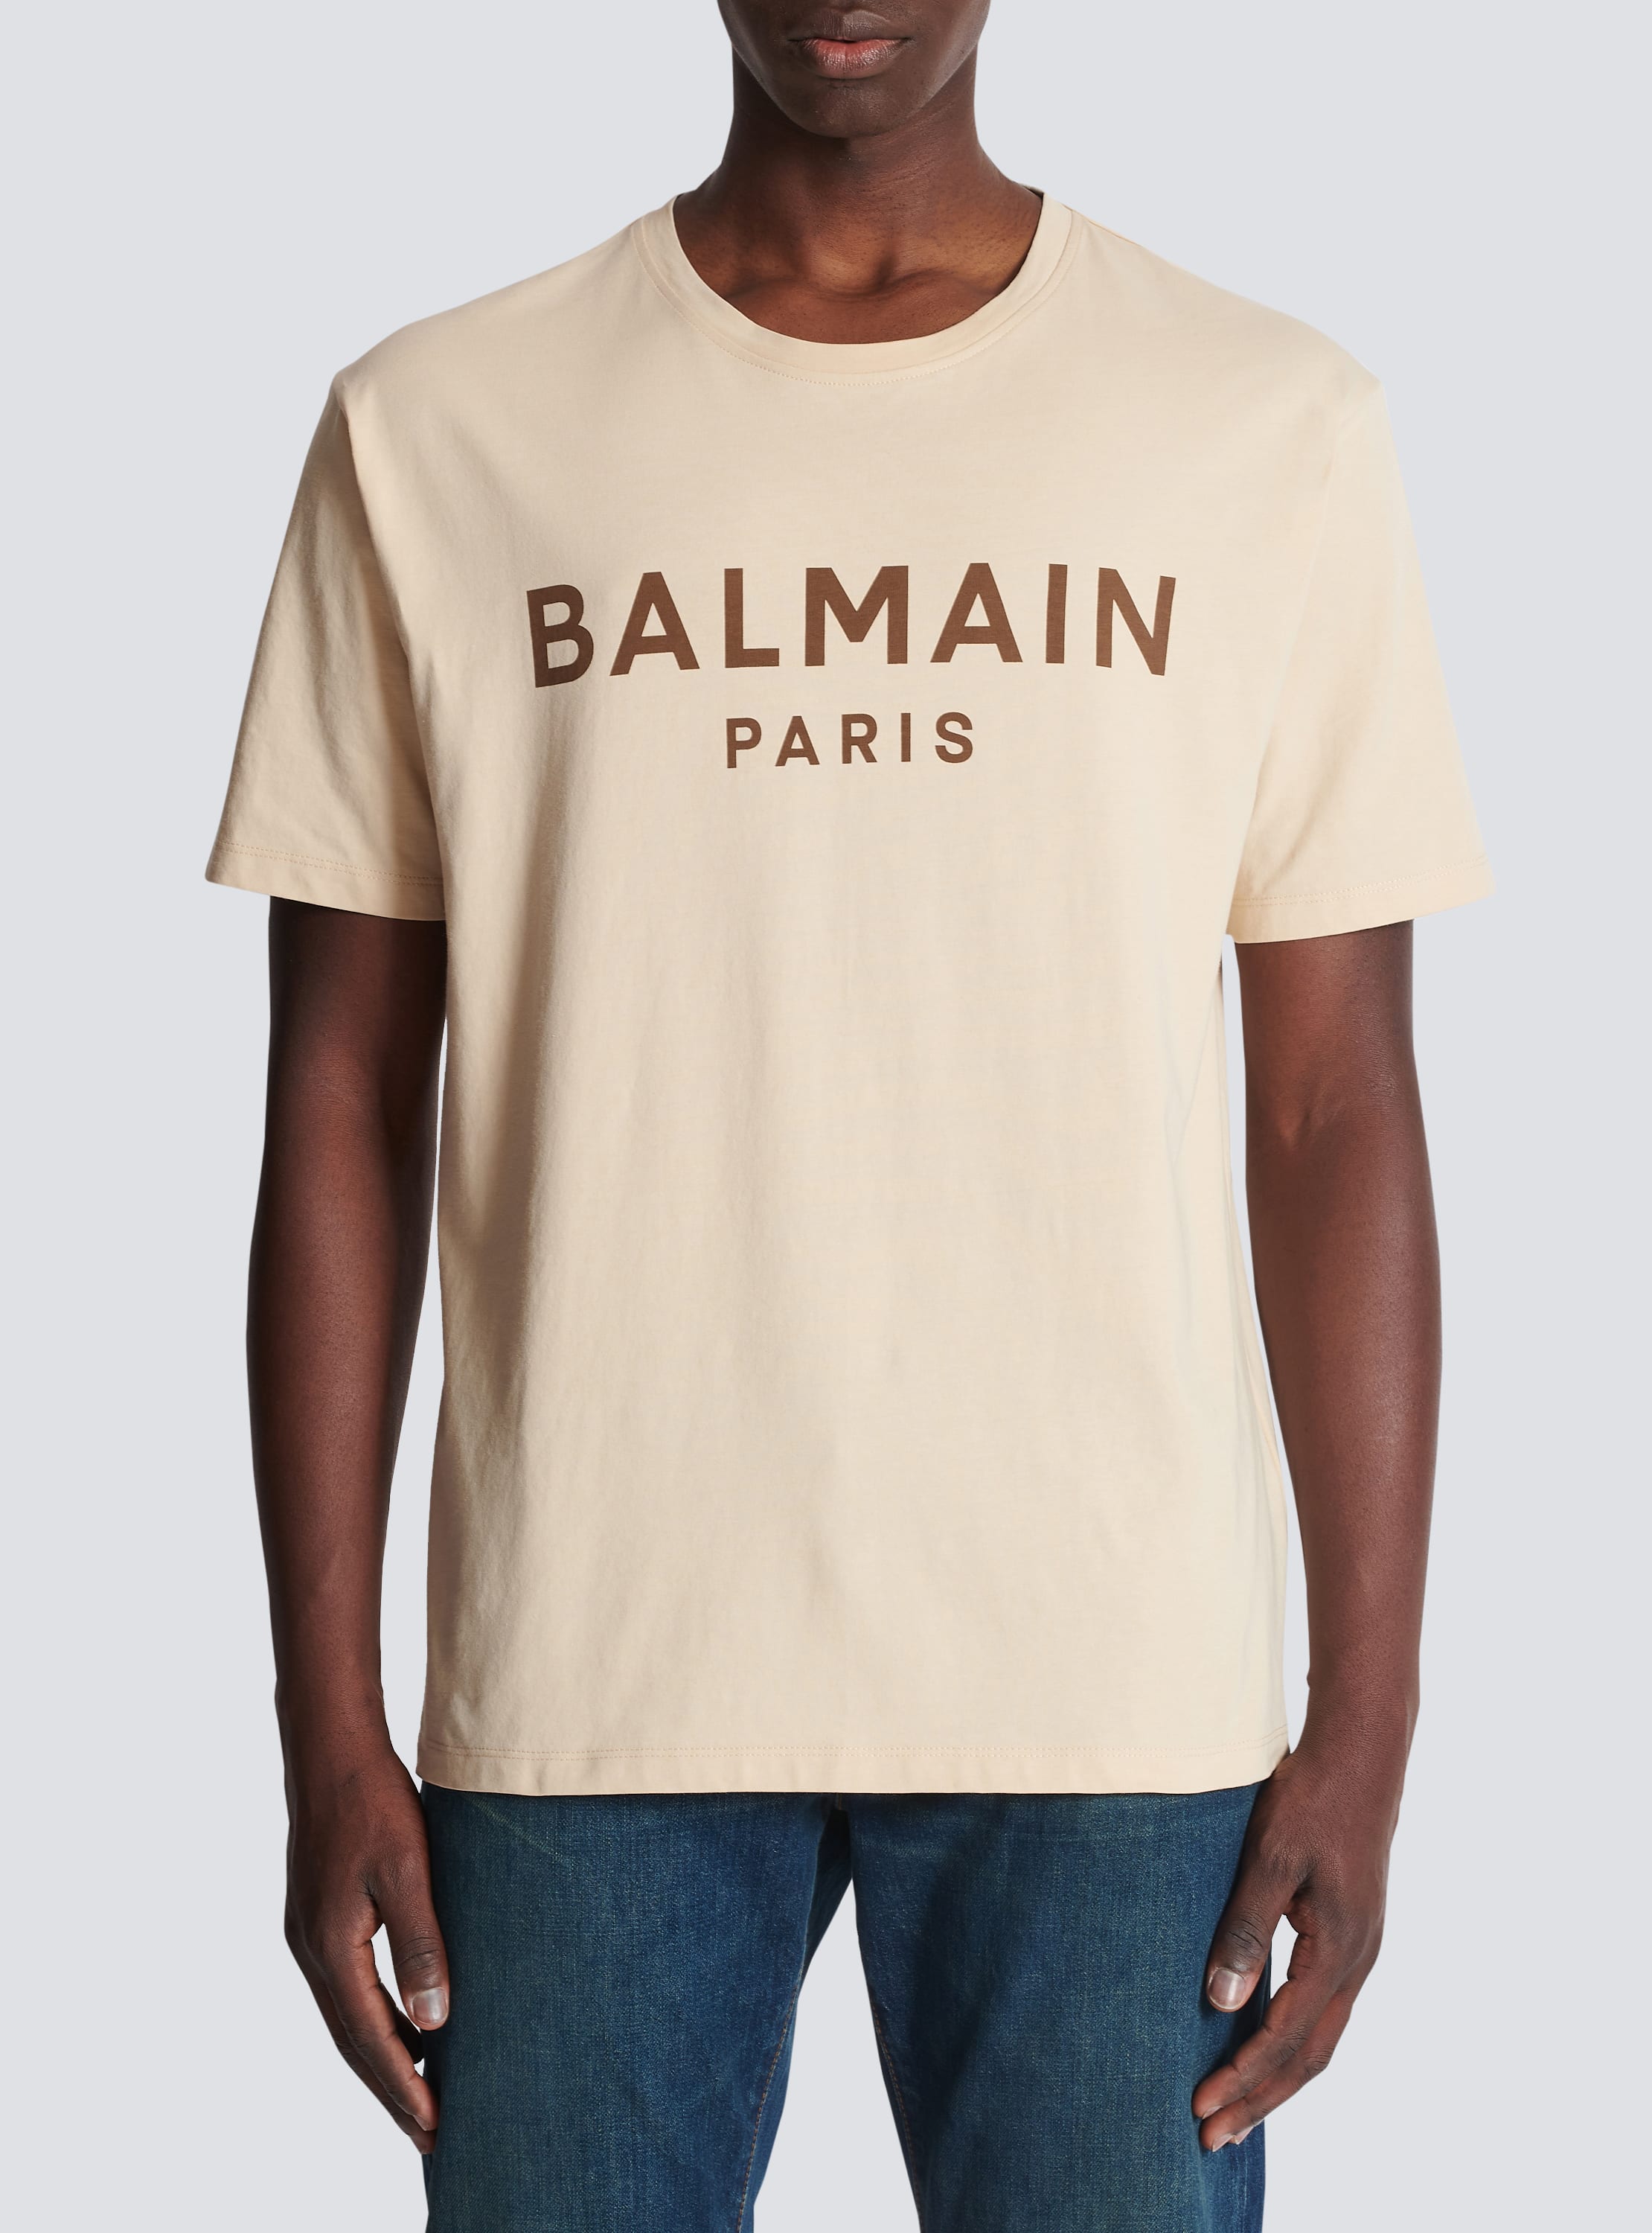 Balmain Paris print beige - Men